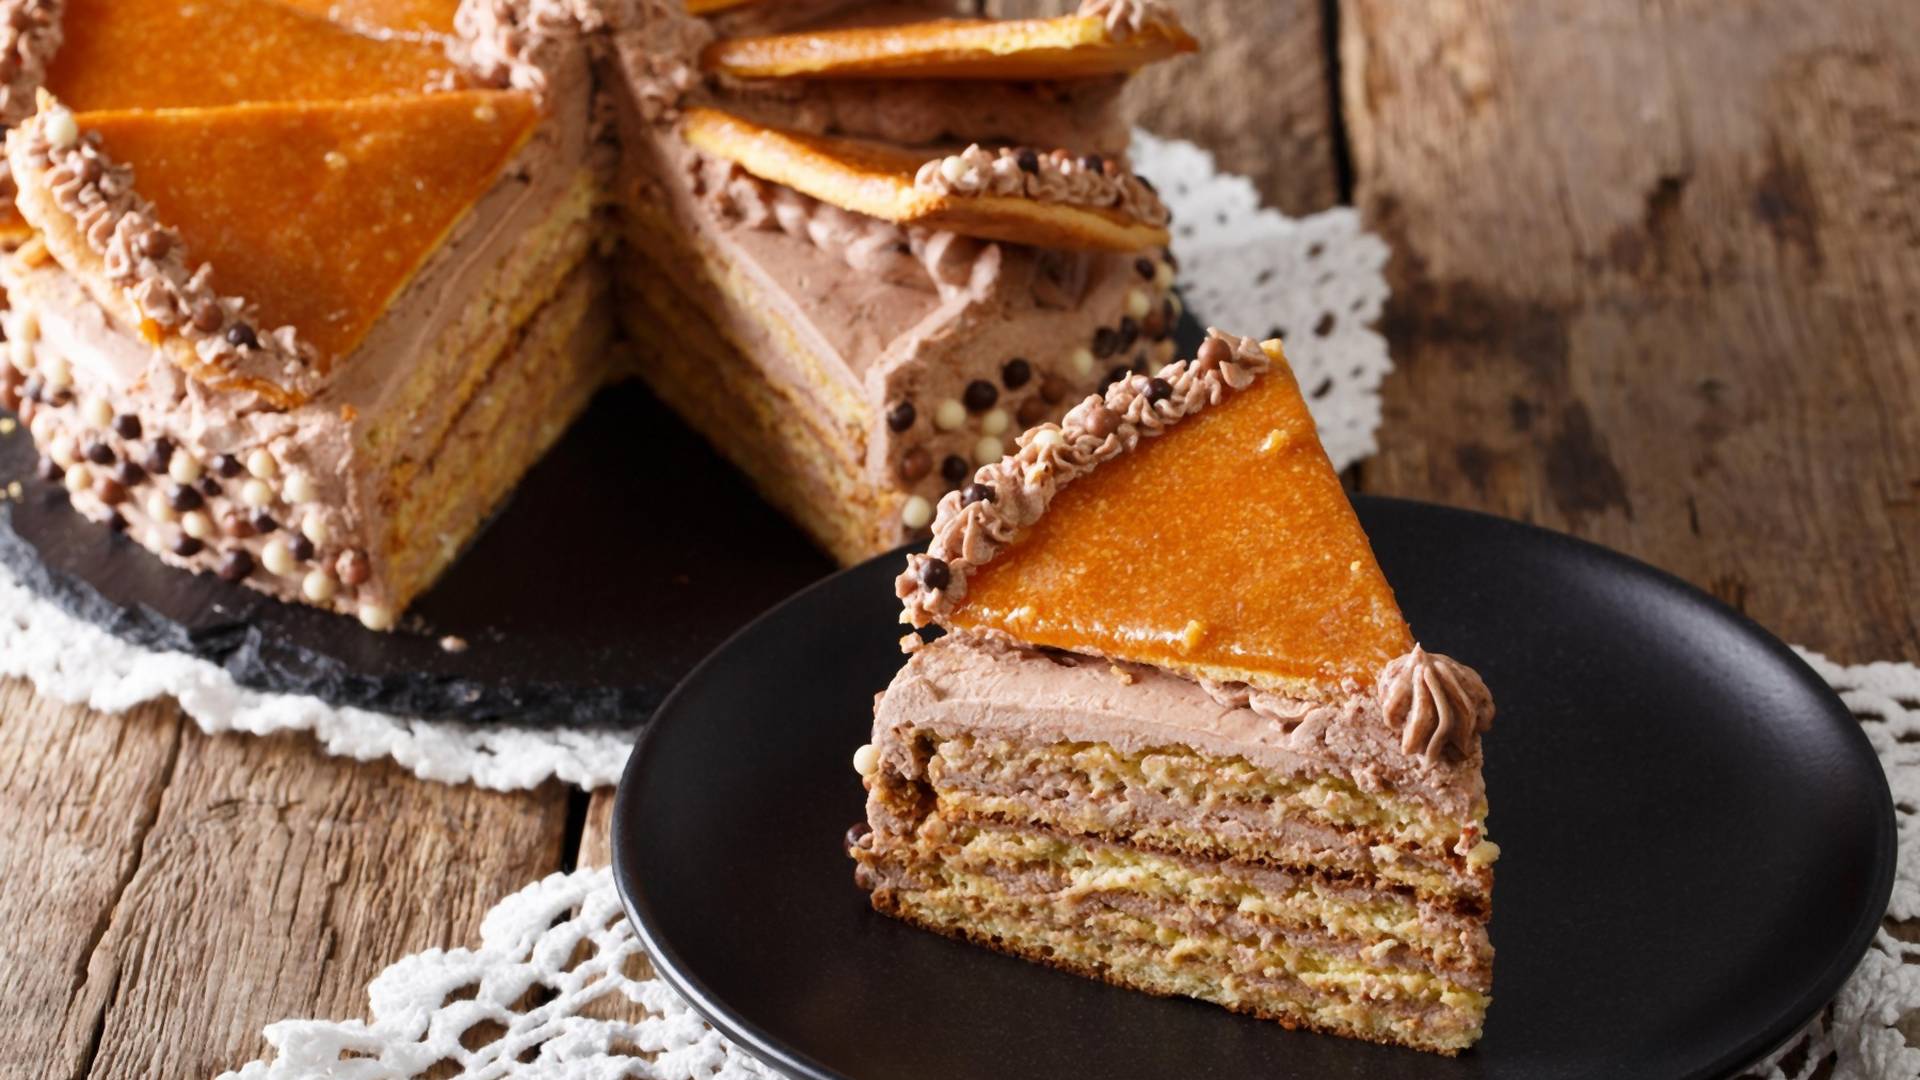 Postoji i američka verzija doboš torte, a recept je otkrila Marta Stjuart - evo kako se pravi